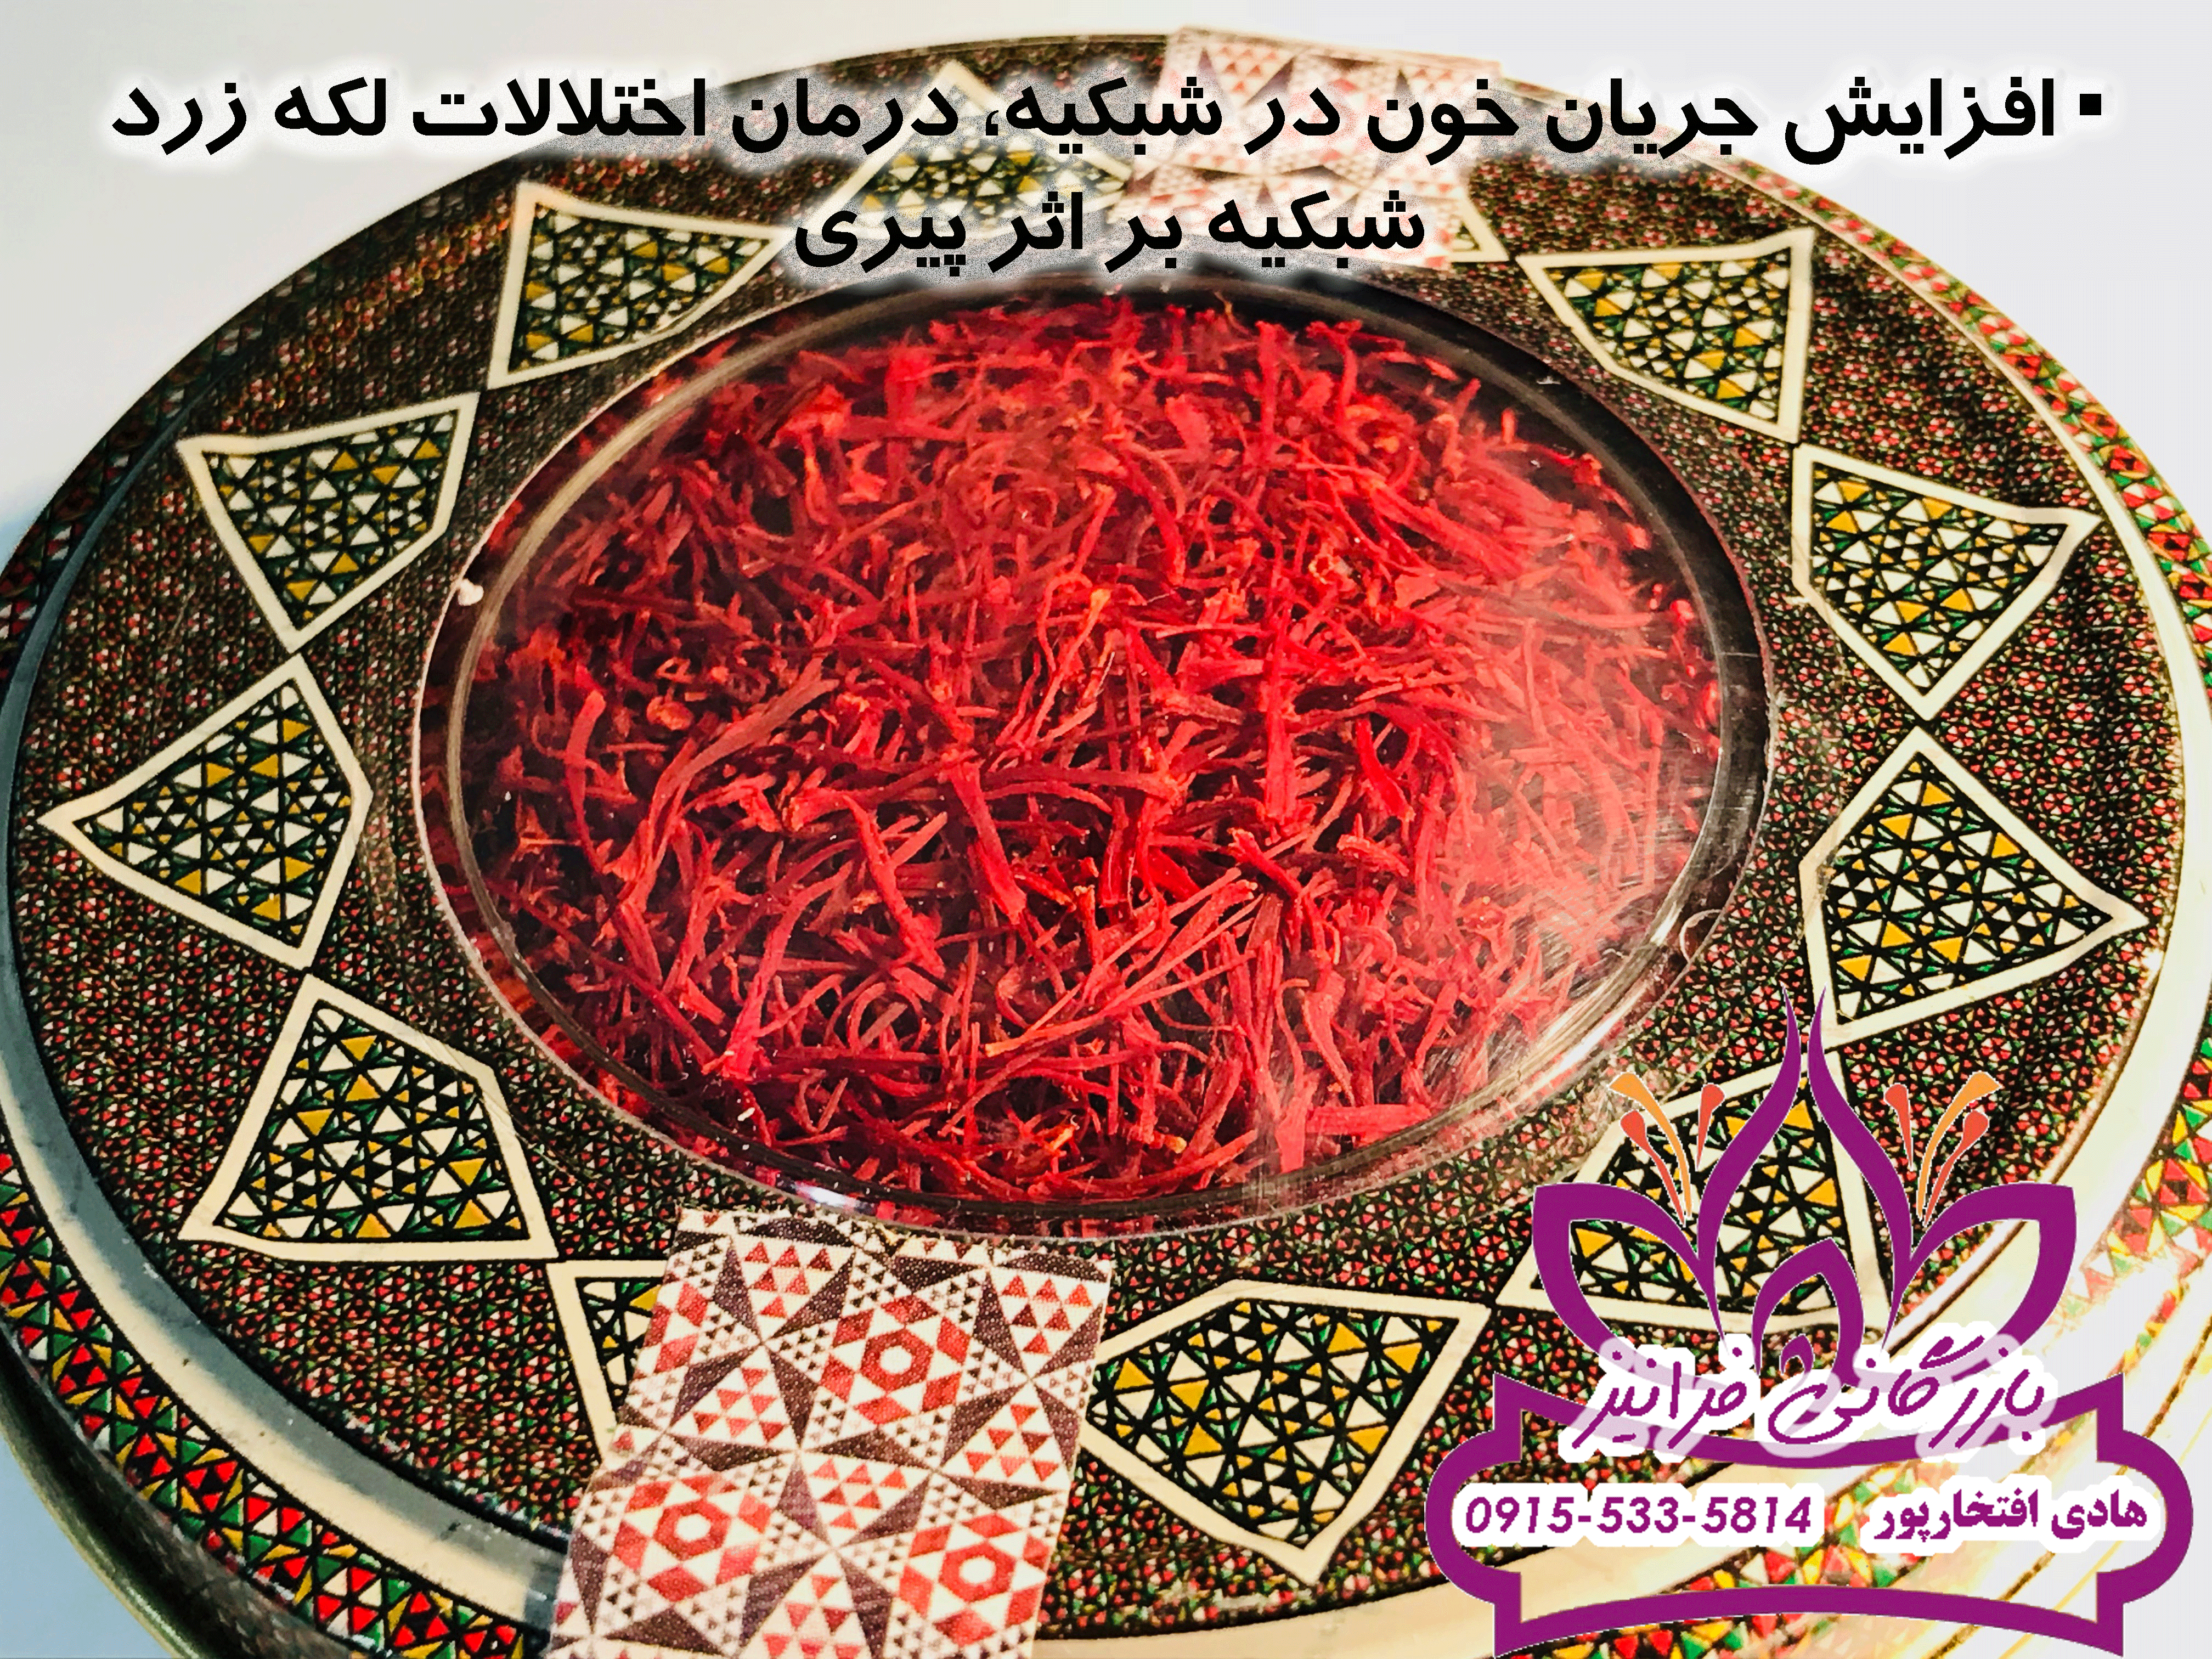 بازار عصاره زعفران بهرامن مشهد